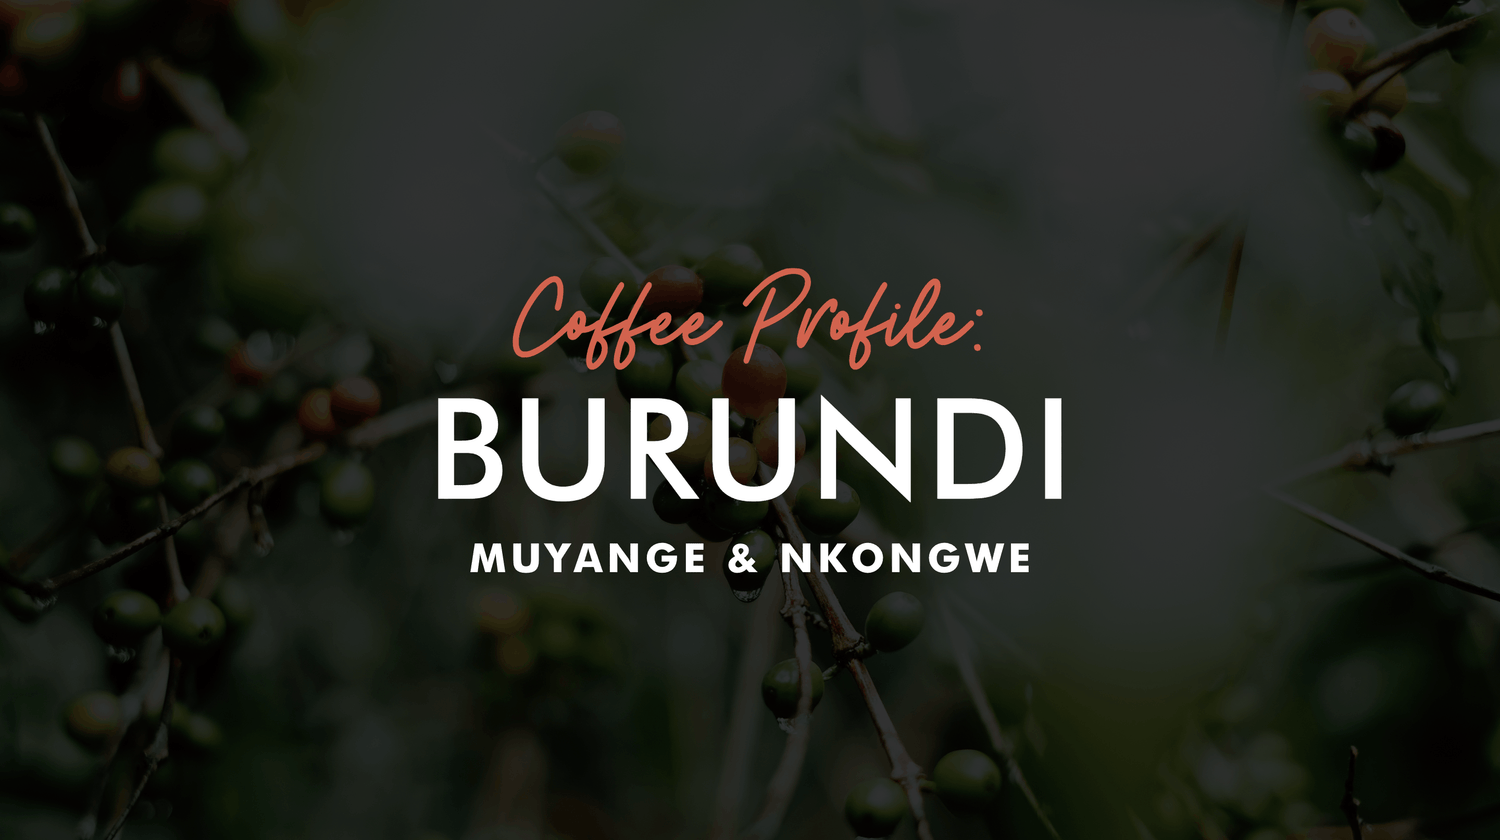 Burundi Coffee Profile:  Muyange & Nkongwe